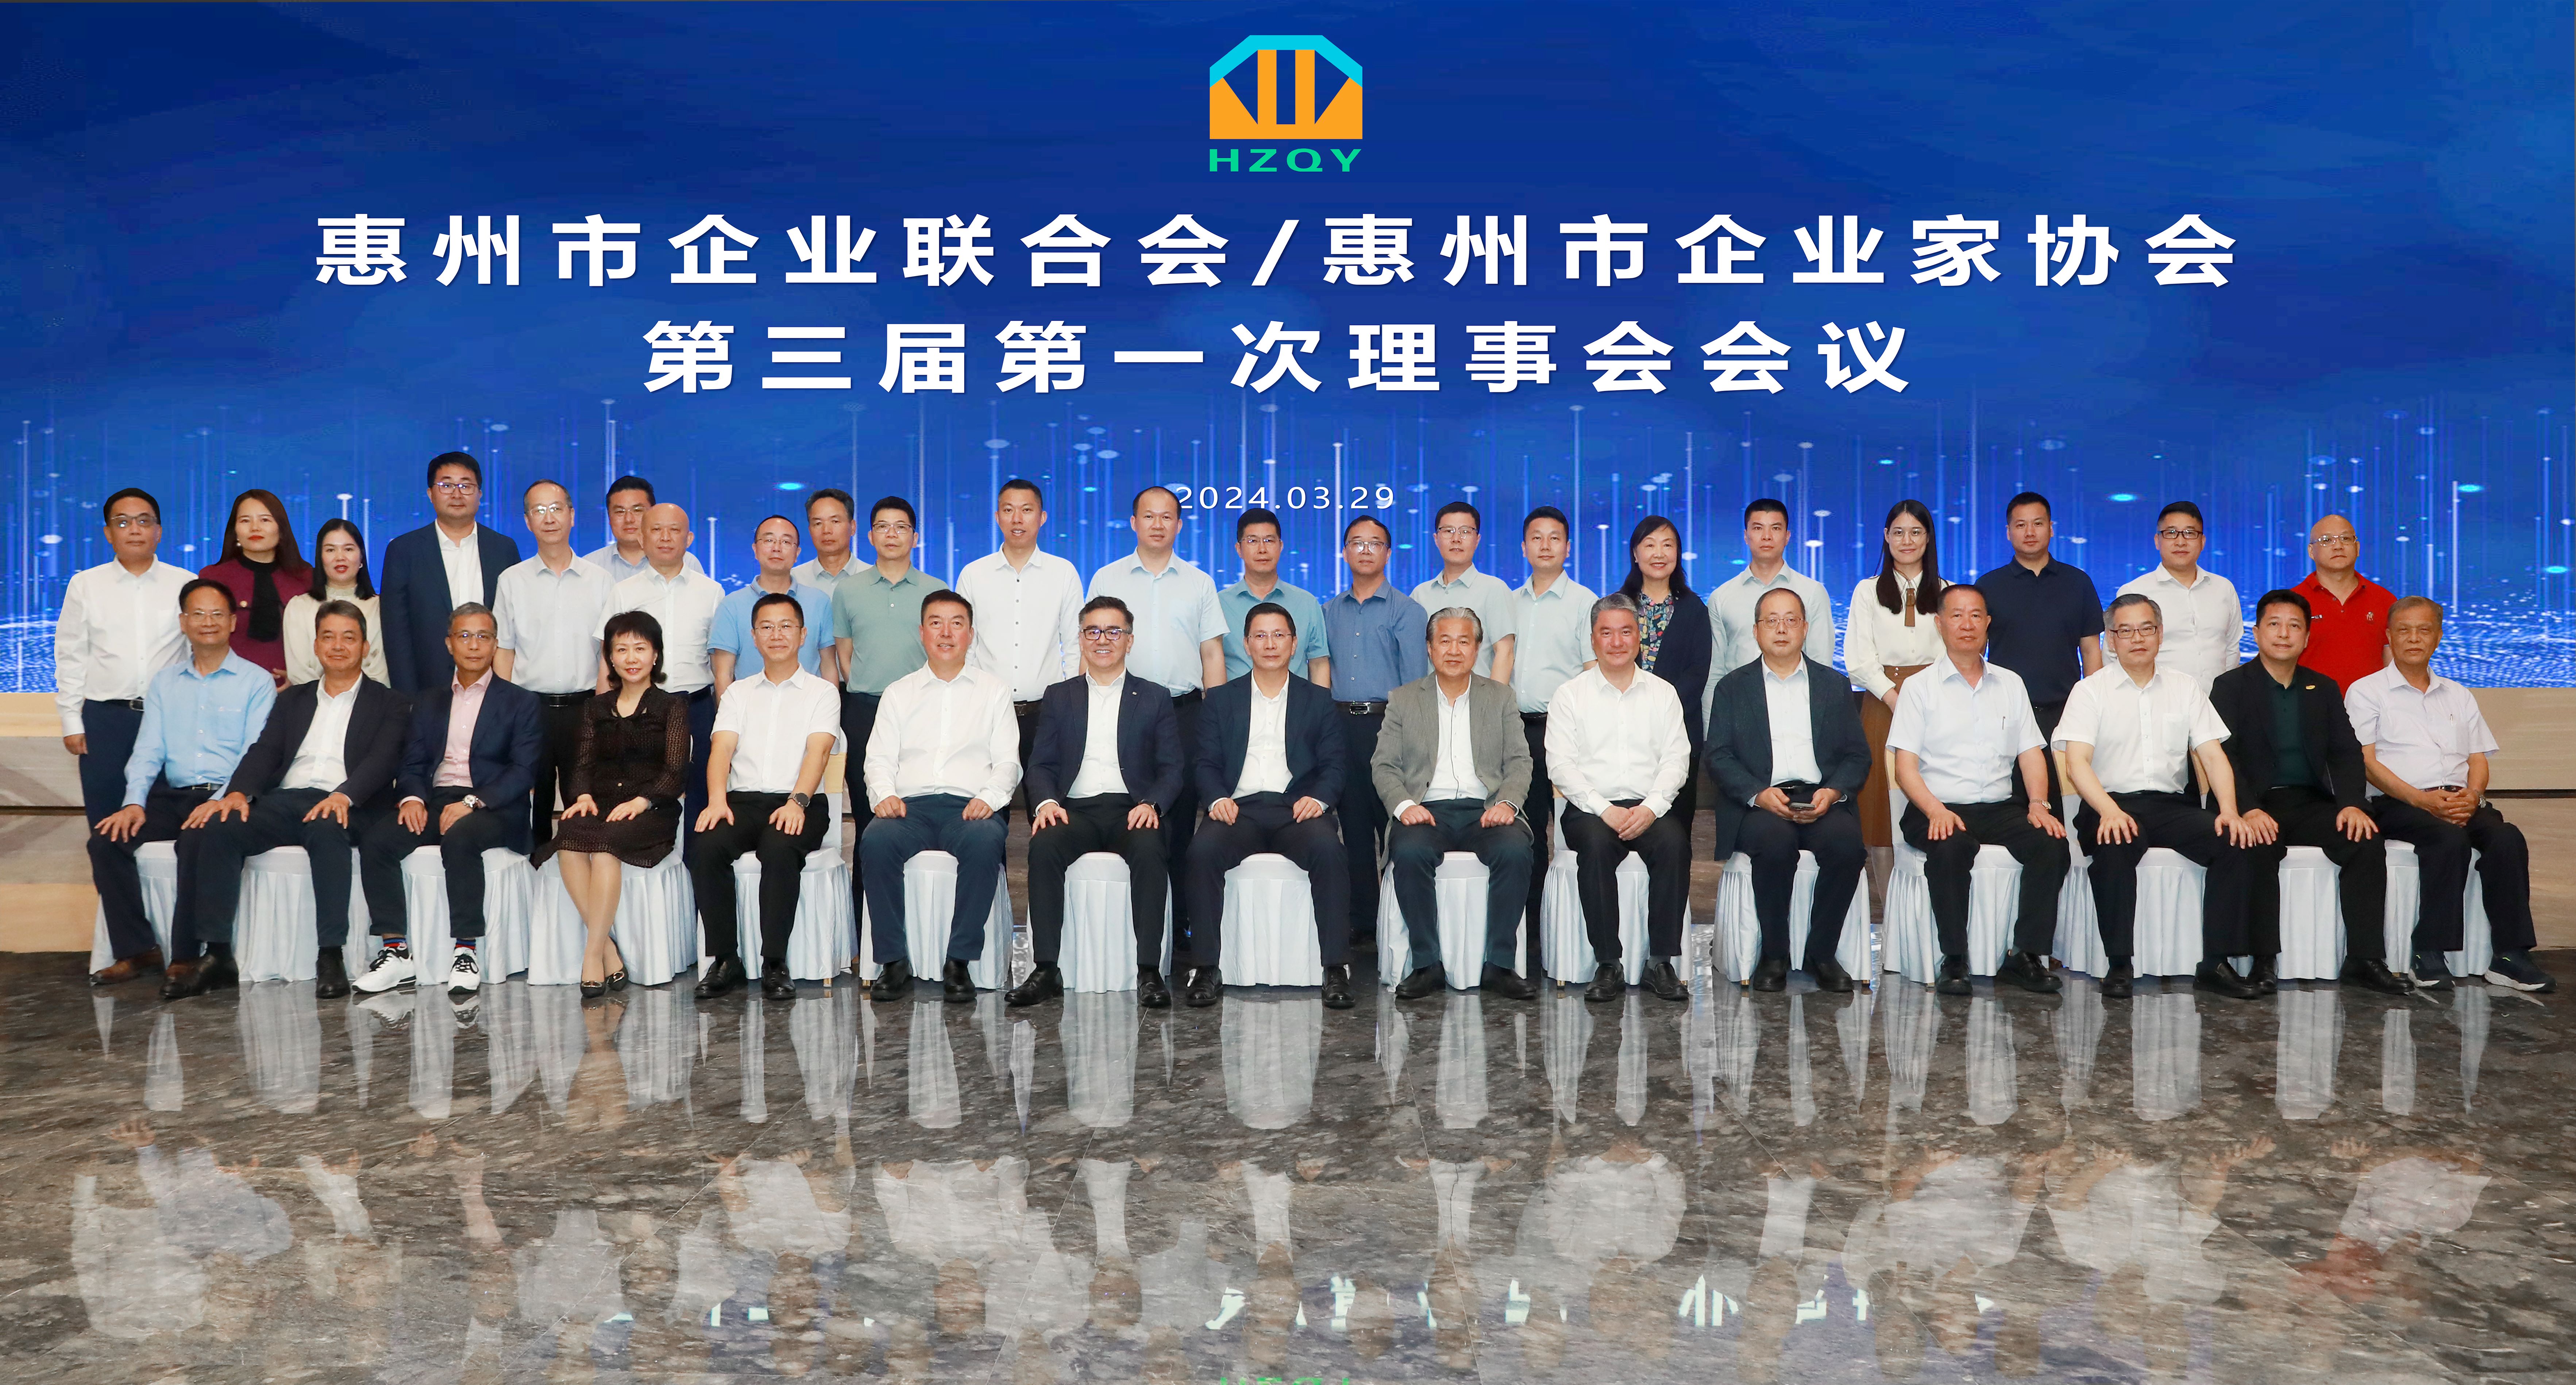 惠州市企业联合会/惠州市企业家协会第三届第一次理事会集会在我司隆重召开